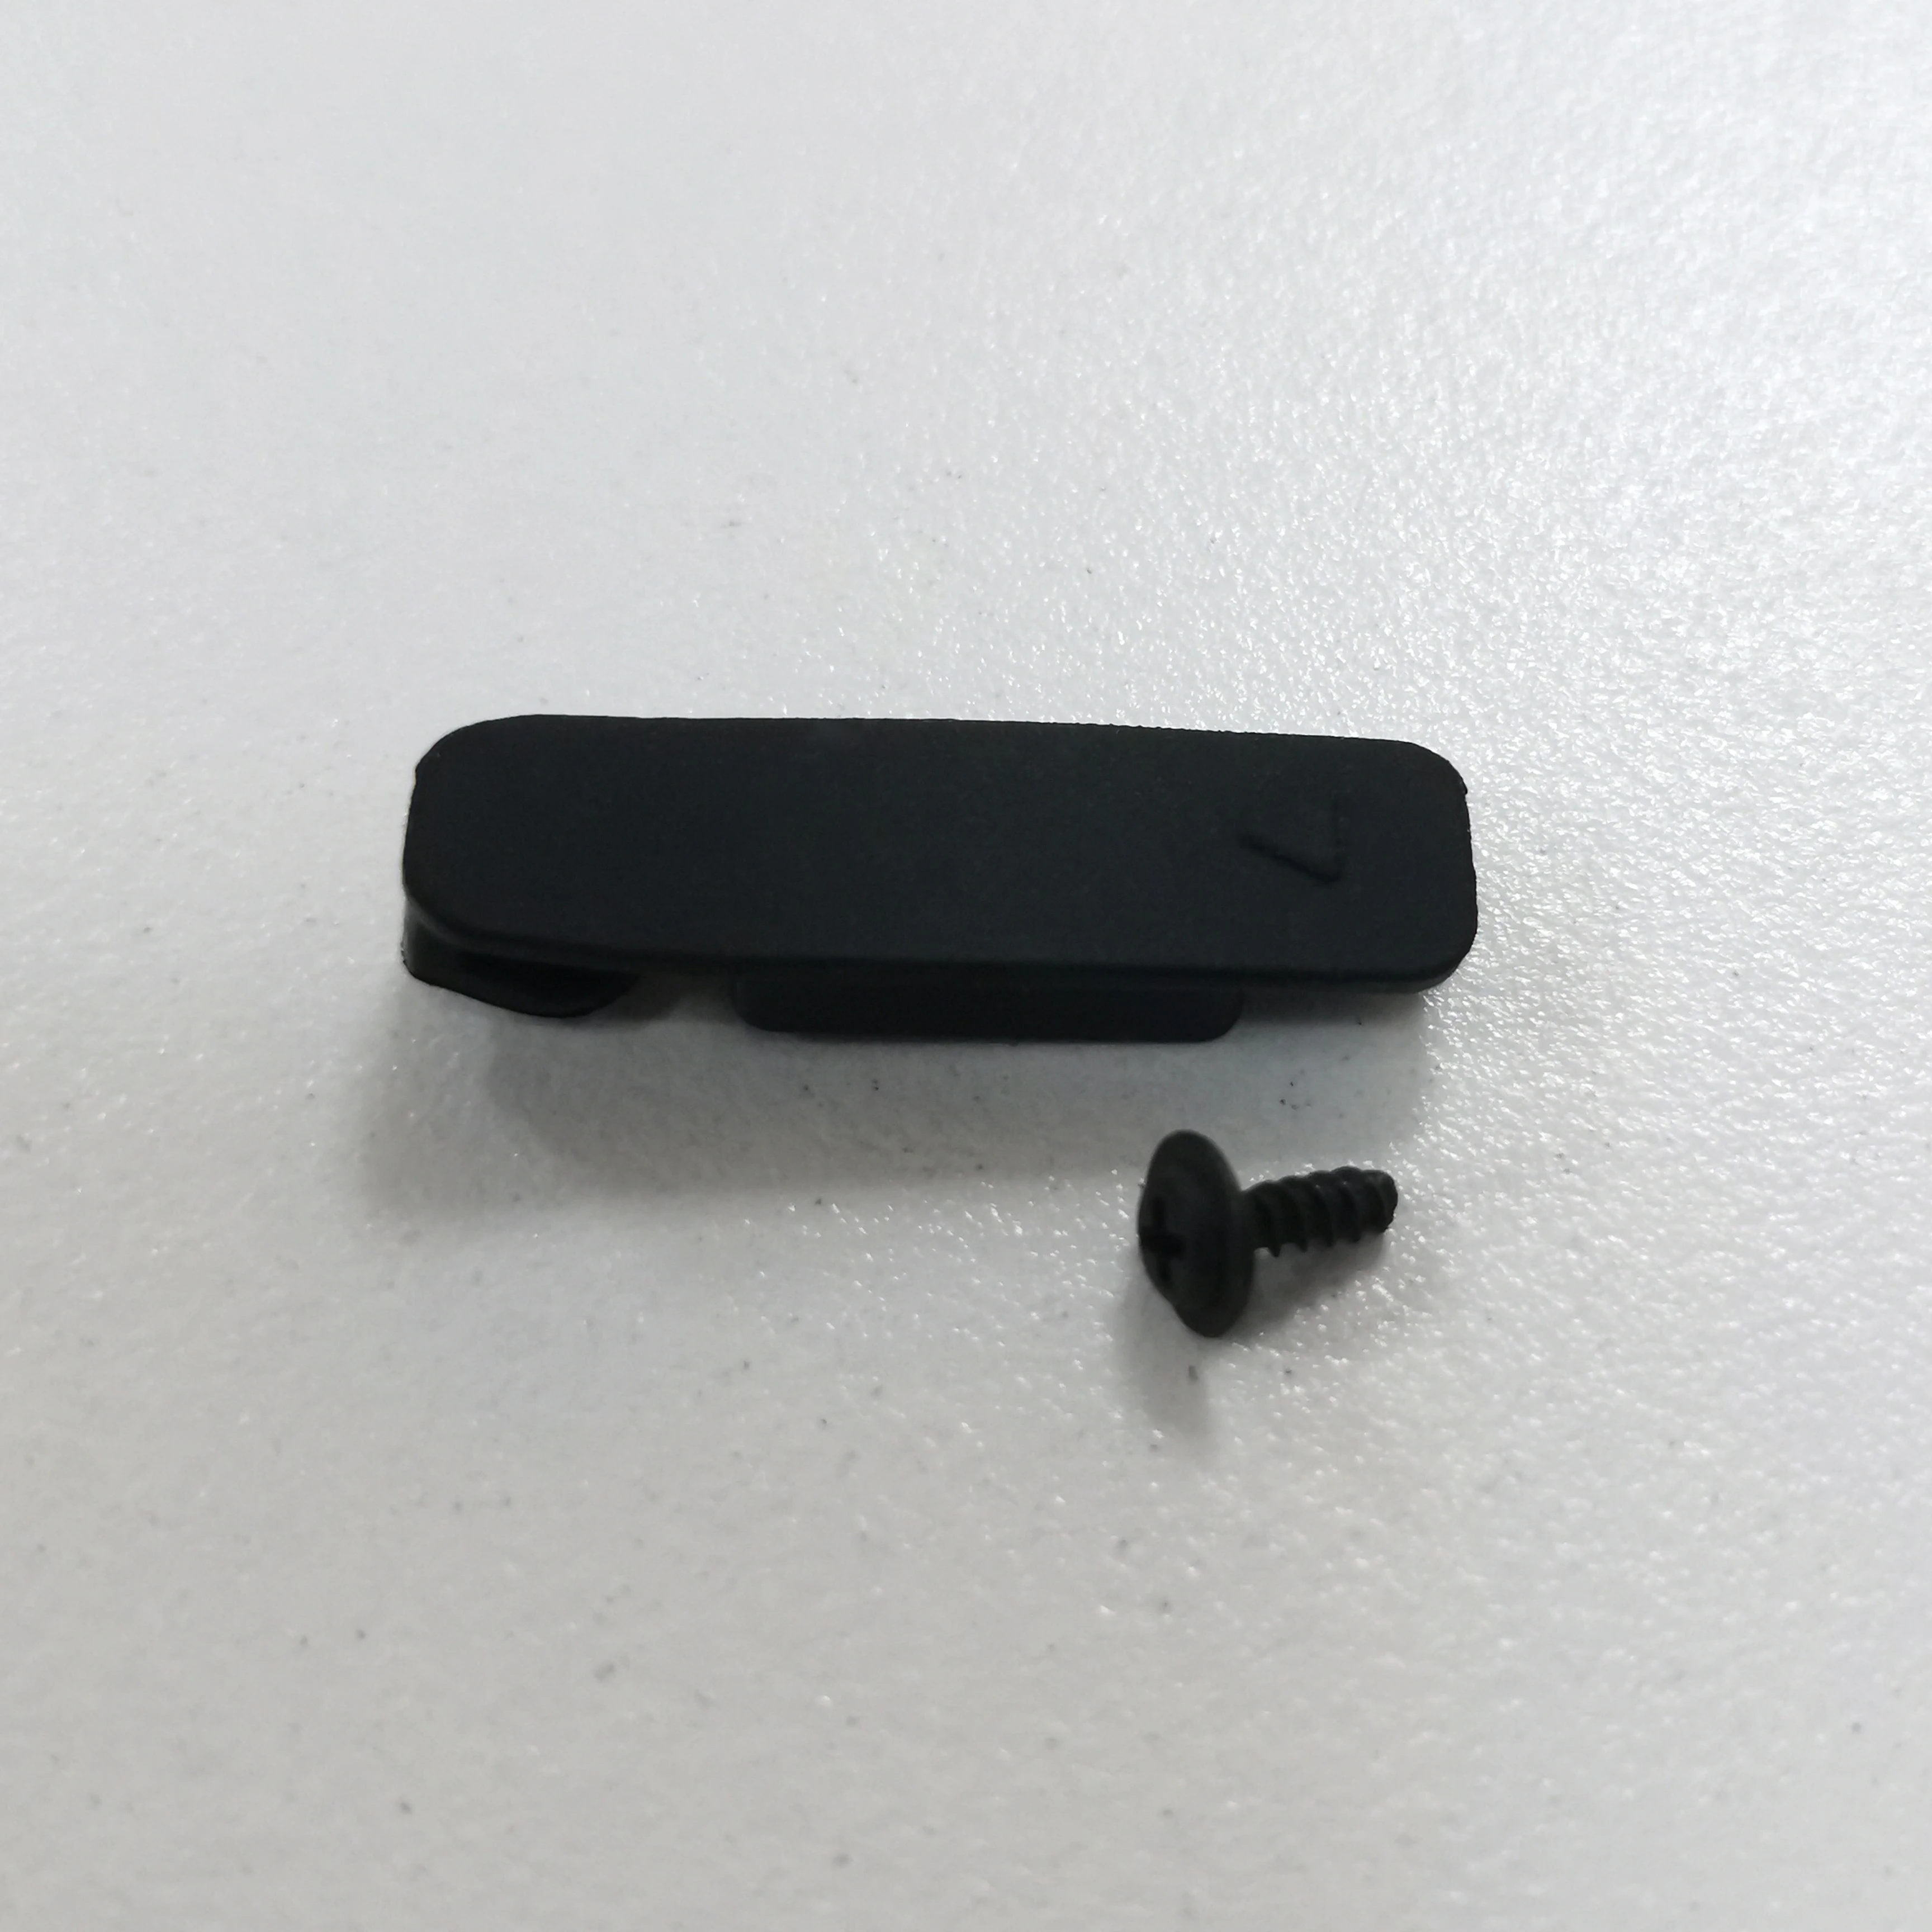 For Garmin Edge 820 USB-Gummi Cover Vandtæt Knappen Skrue Oprindelige Aldring Reparation Udskiftning